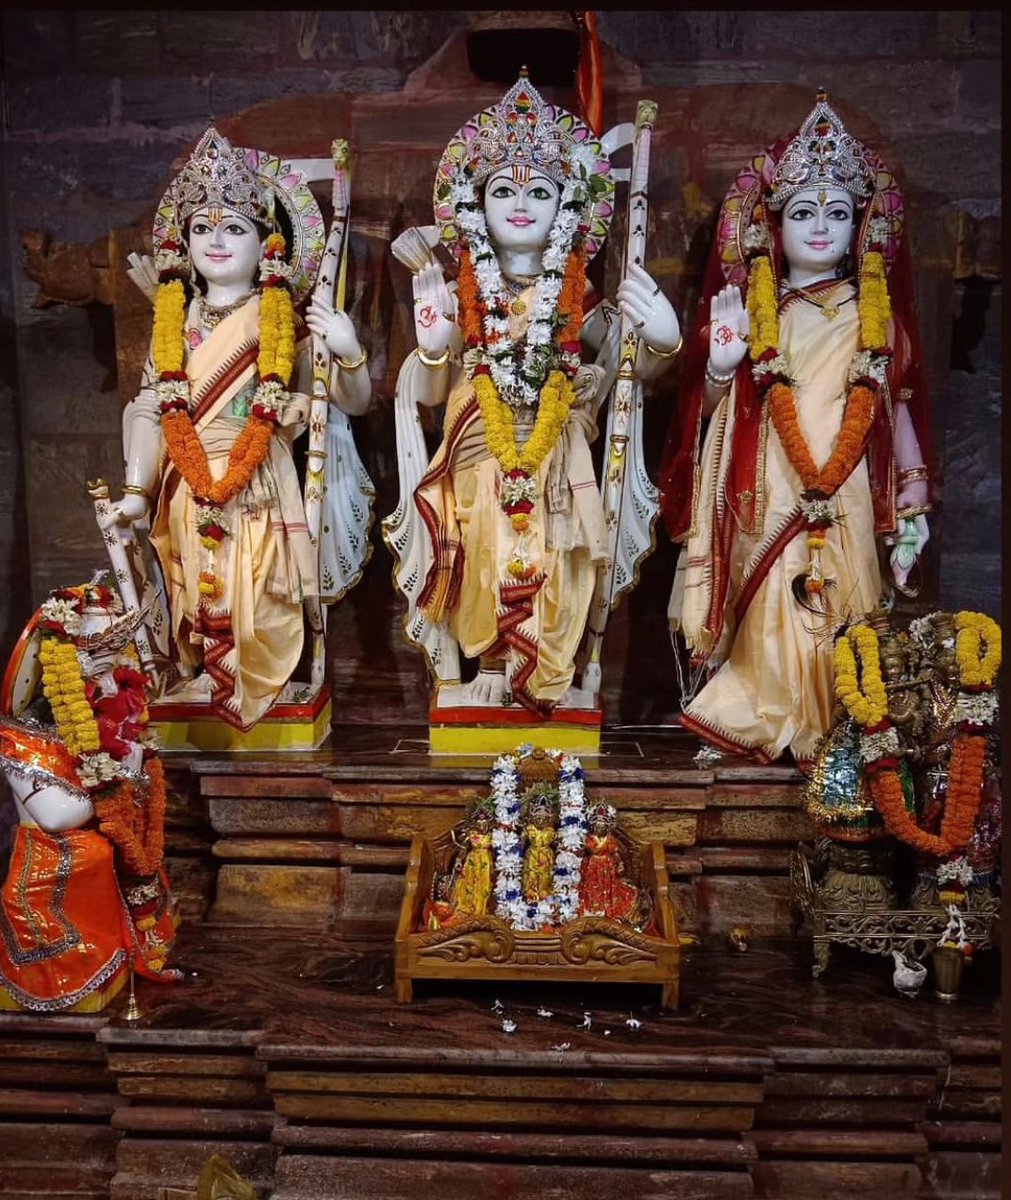 कन्दर्प अगणित अमित छवि नव नील नीरद सुन्दरं । 
पटपीत मानहुँ तडित रुचि शुचि नोमि जनक सुतावरं ॥

Shree Rama, Lakshman & Mata Sita are being worshipped as presiding deities at Shree Rama Temple, at the crest of a hill of Fatehgarh, Nayagarh District, #Odisha. 😍🙏🏽